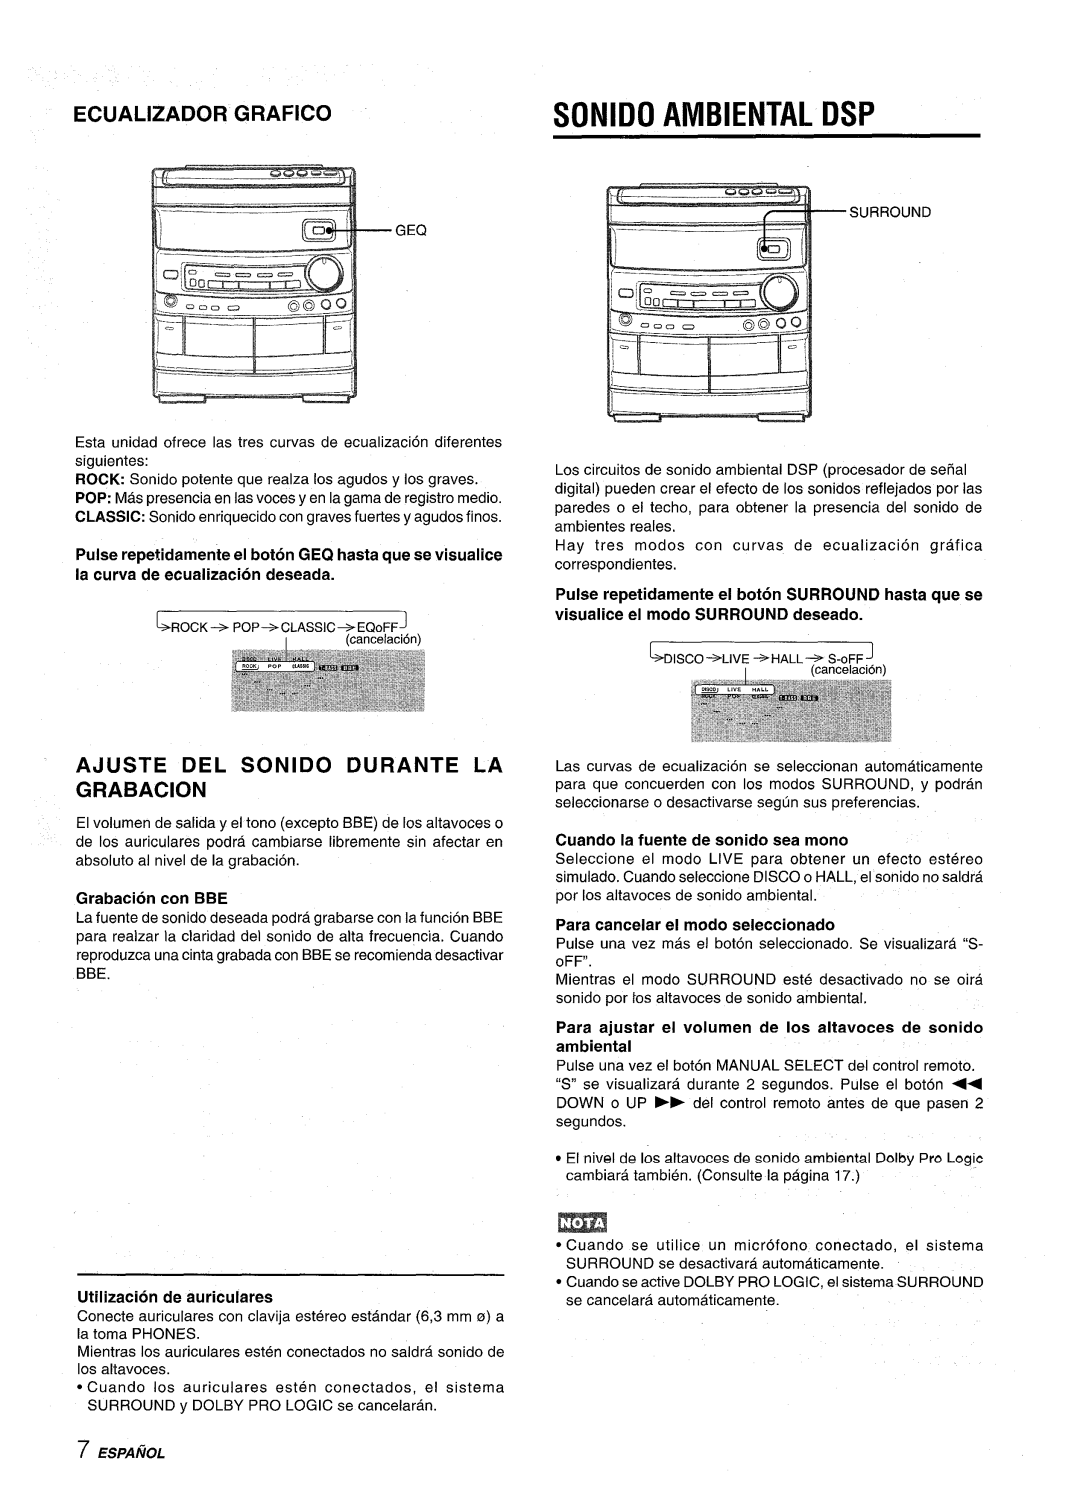 Aiwa NSX-AV800 manual Sonido Ambiental Dsp, Ecualizador Grafico, Ajuste Del Sonido Durante La Grabacion, 11 G534--=Q 